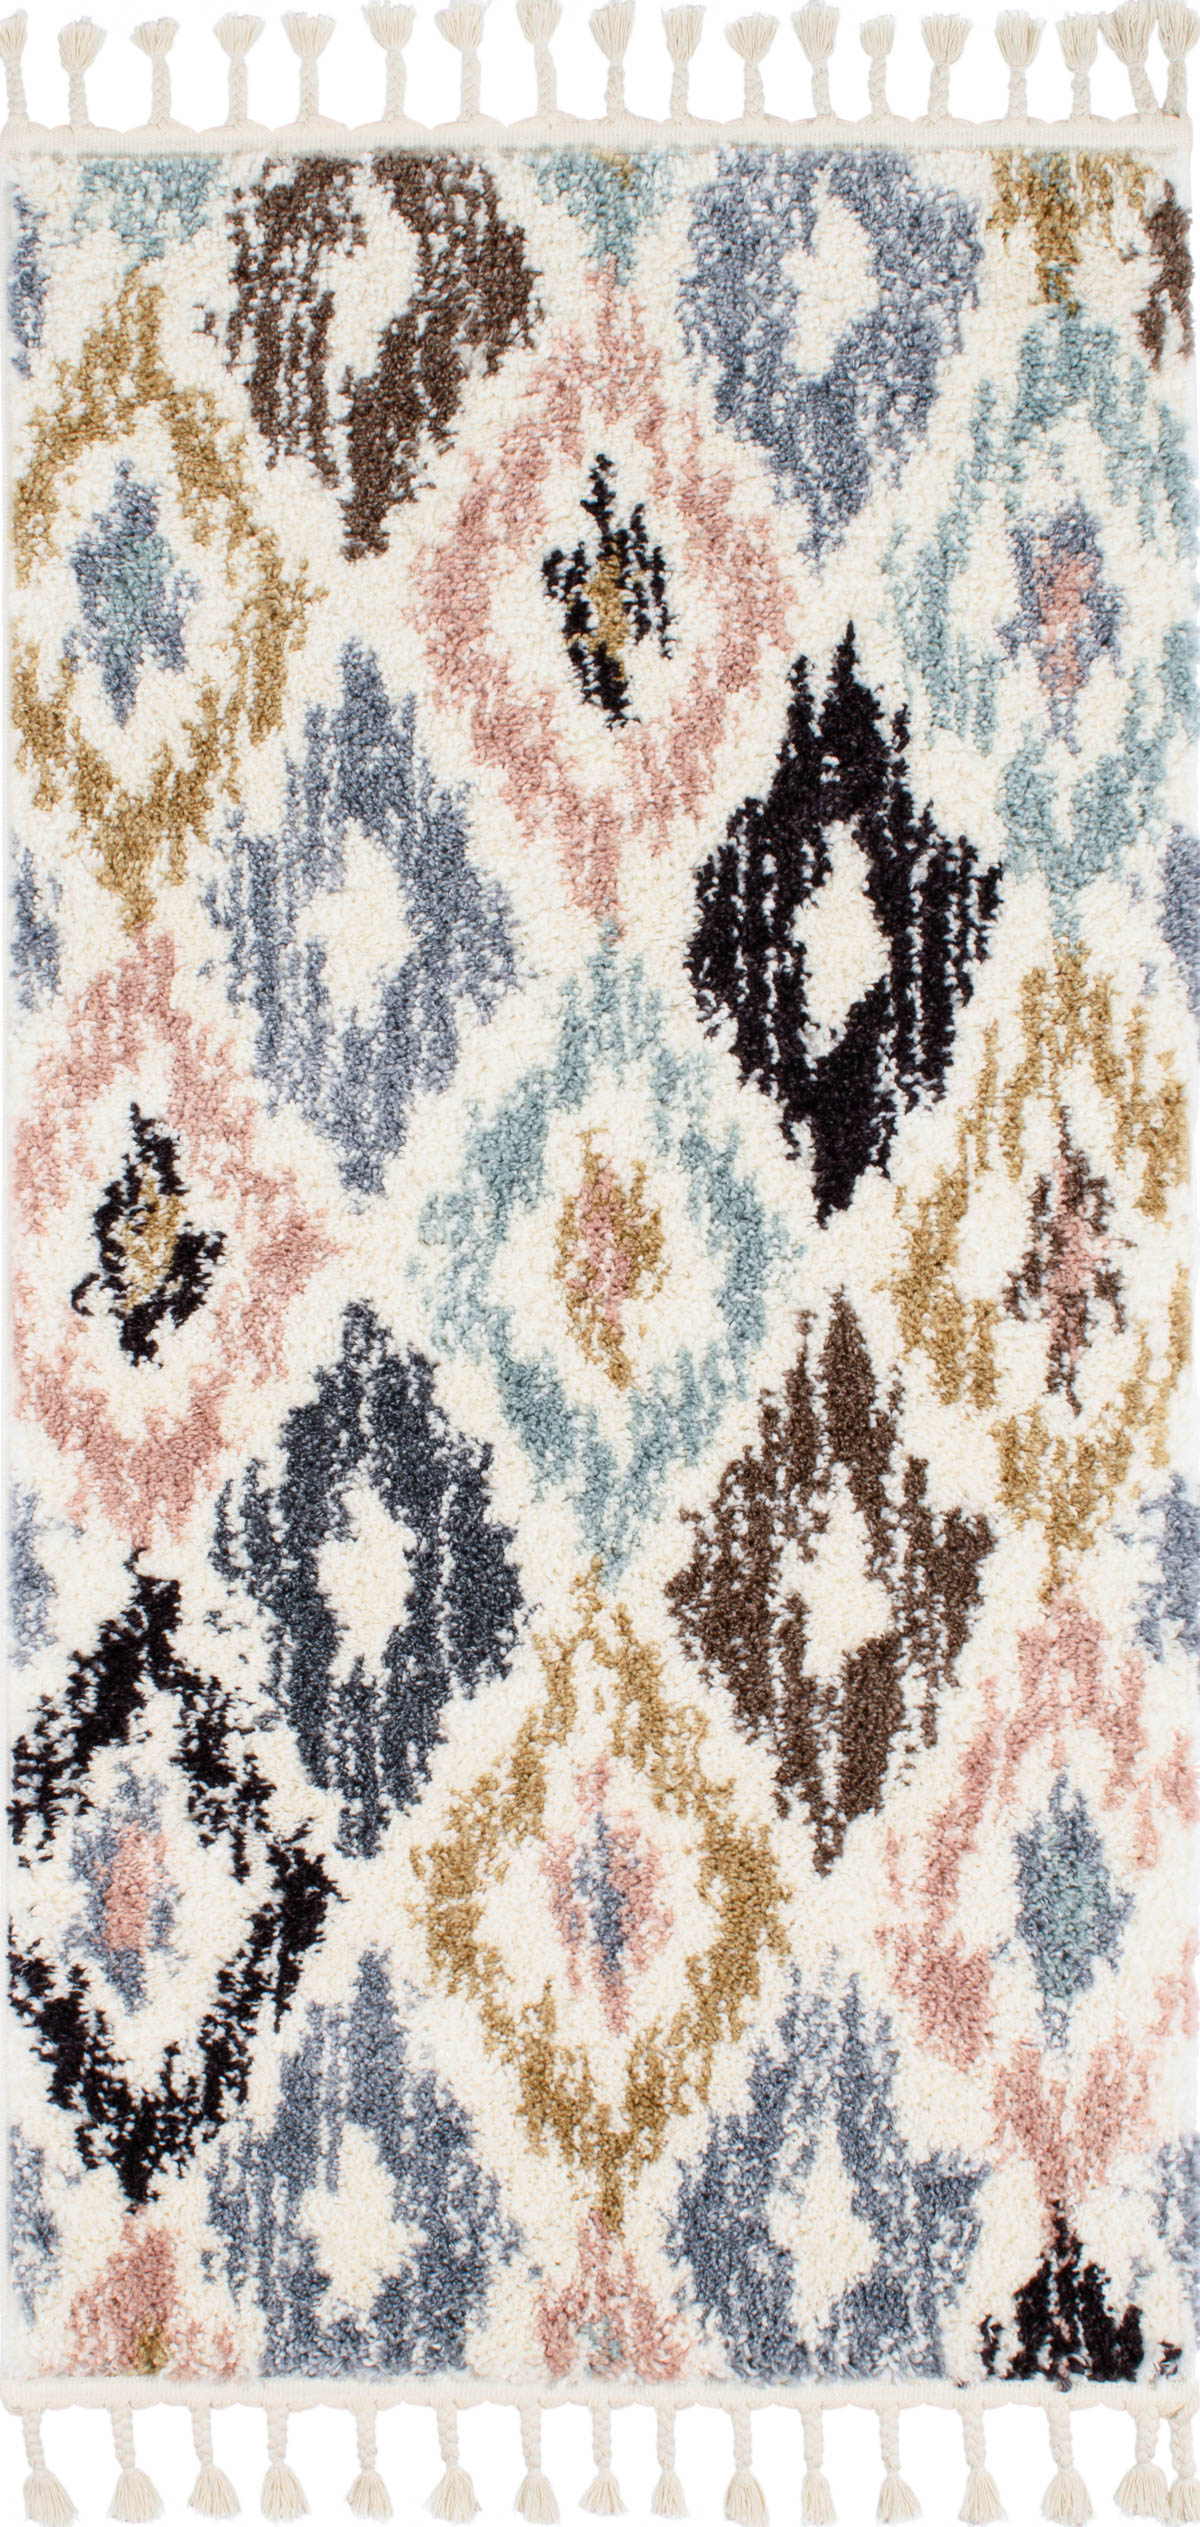 Tapis couloir berbere 80x150 multicolore motif géométrique losange